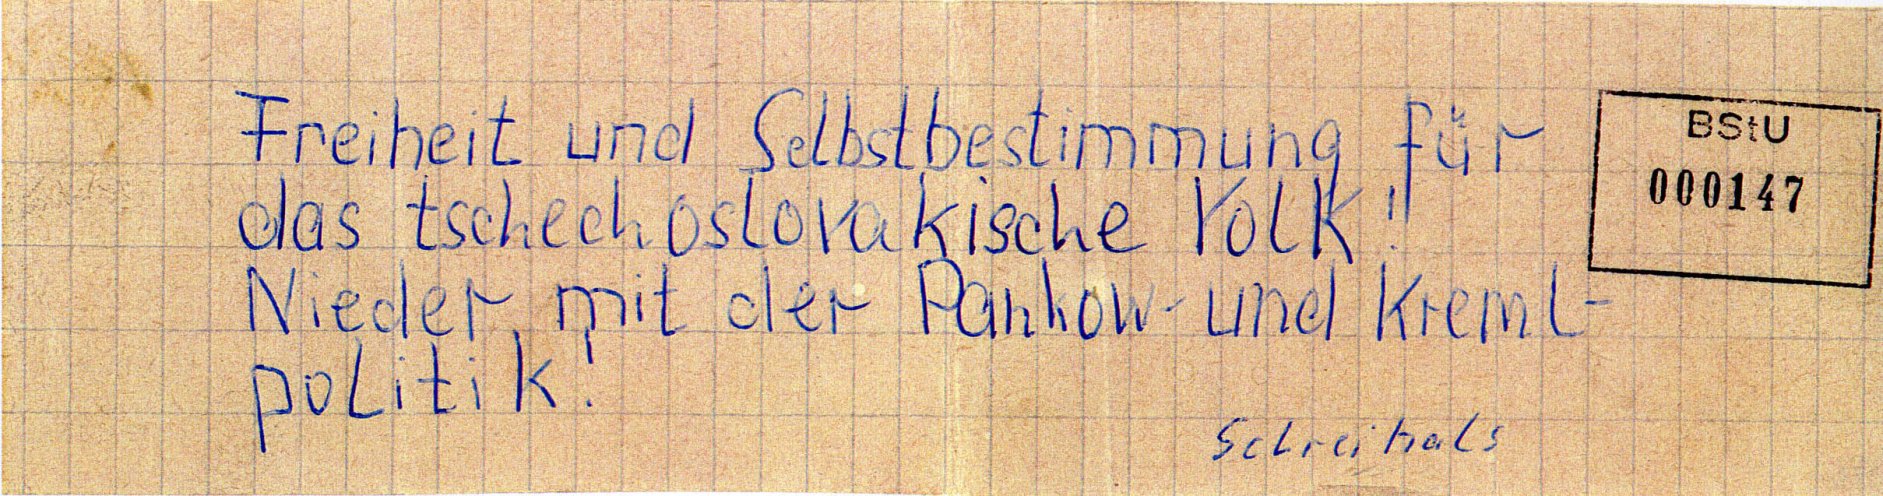 In Schwerin schreibt ein 21-jähriger Flugblätter gegen den Einmarsch der Warschauer-Pakt-Truppen in die CSSR und verteilt diese in Hausbriefkästen in seiner Wohngegend. Quelle: BStU, MfS, BV Schwerin, AU 11/69, GA Bd. 3, Bl. 147, Seite 1 von 10